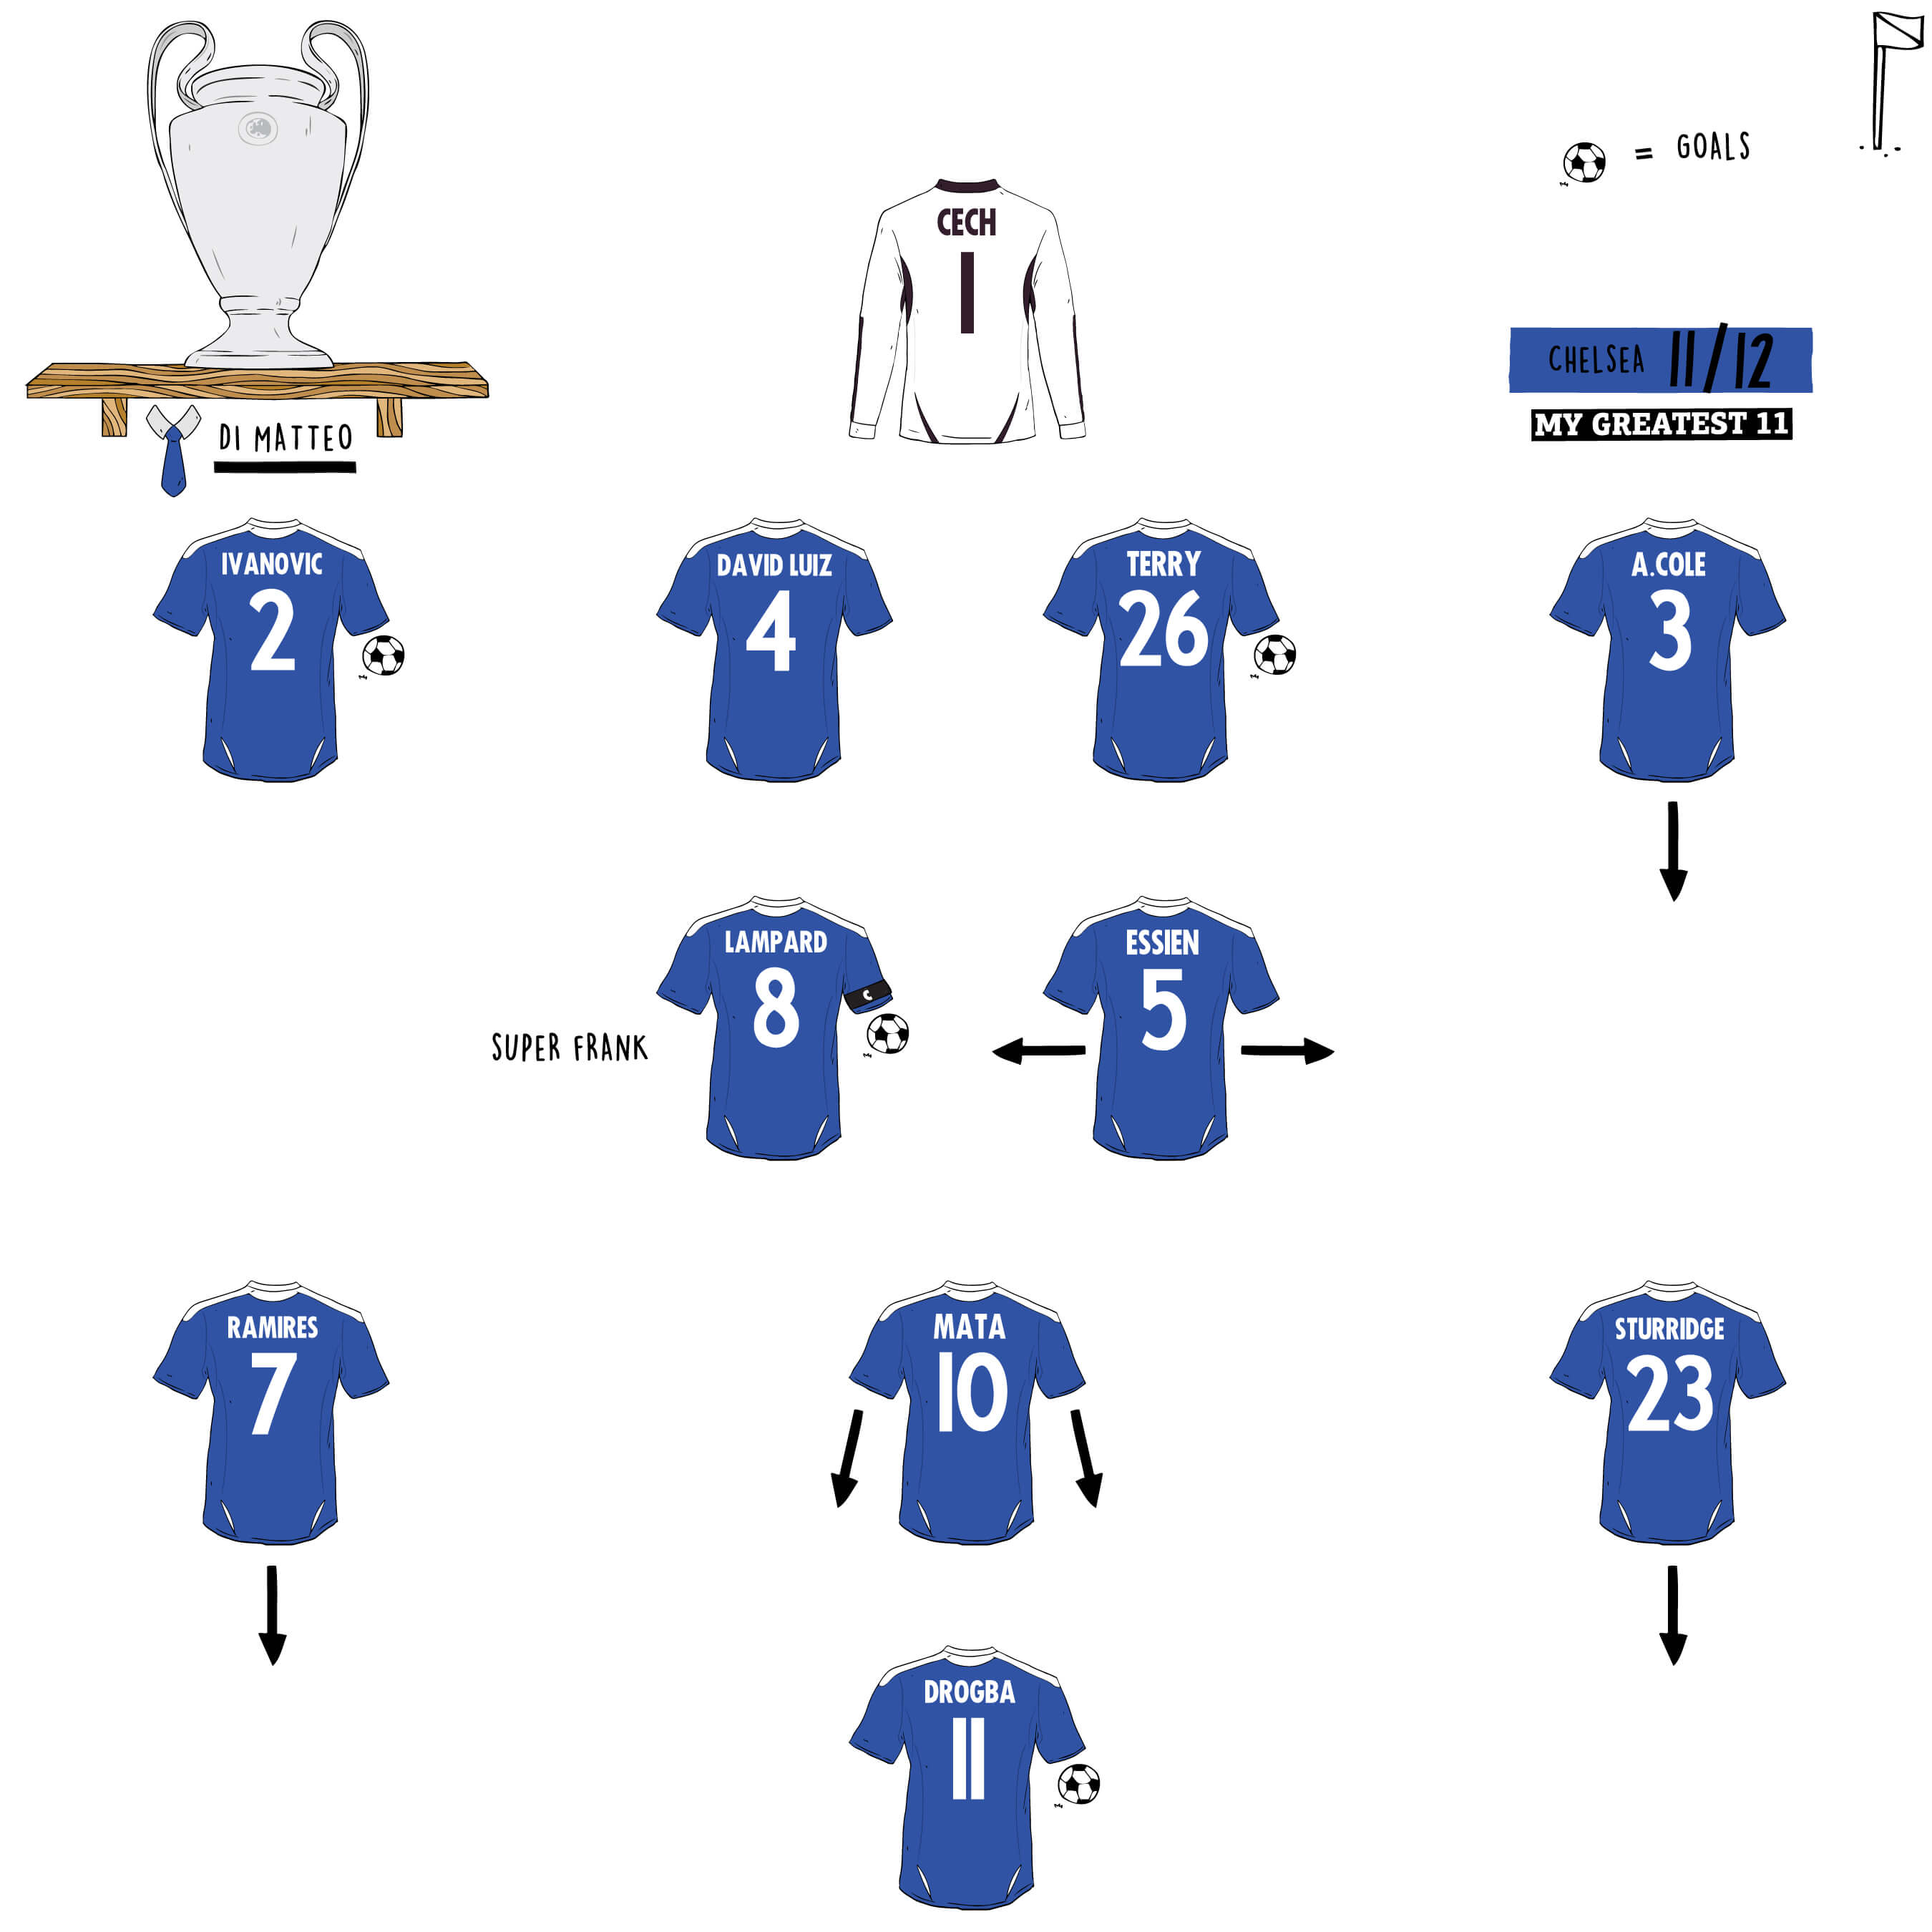 Chelsea 4-1 Napoli (aggregate 5-4), 2012